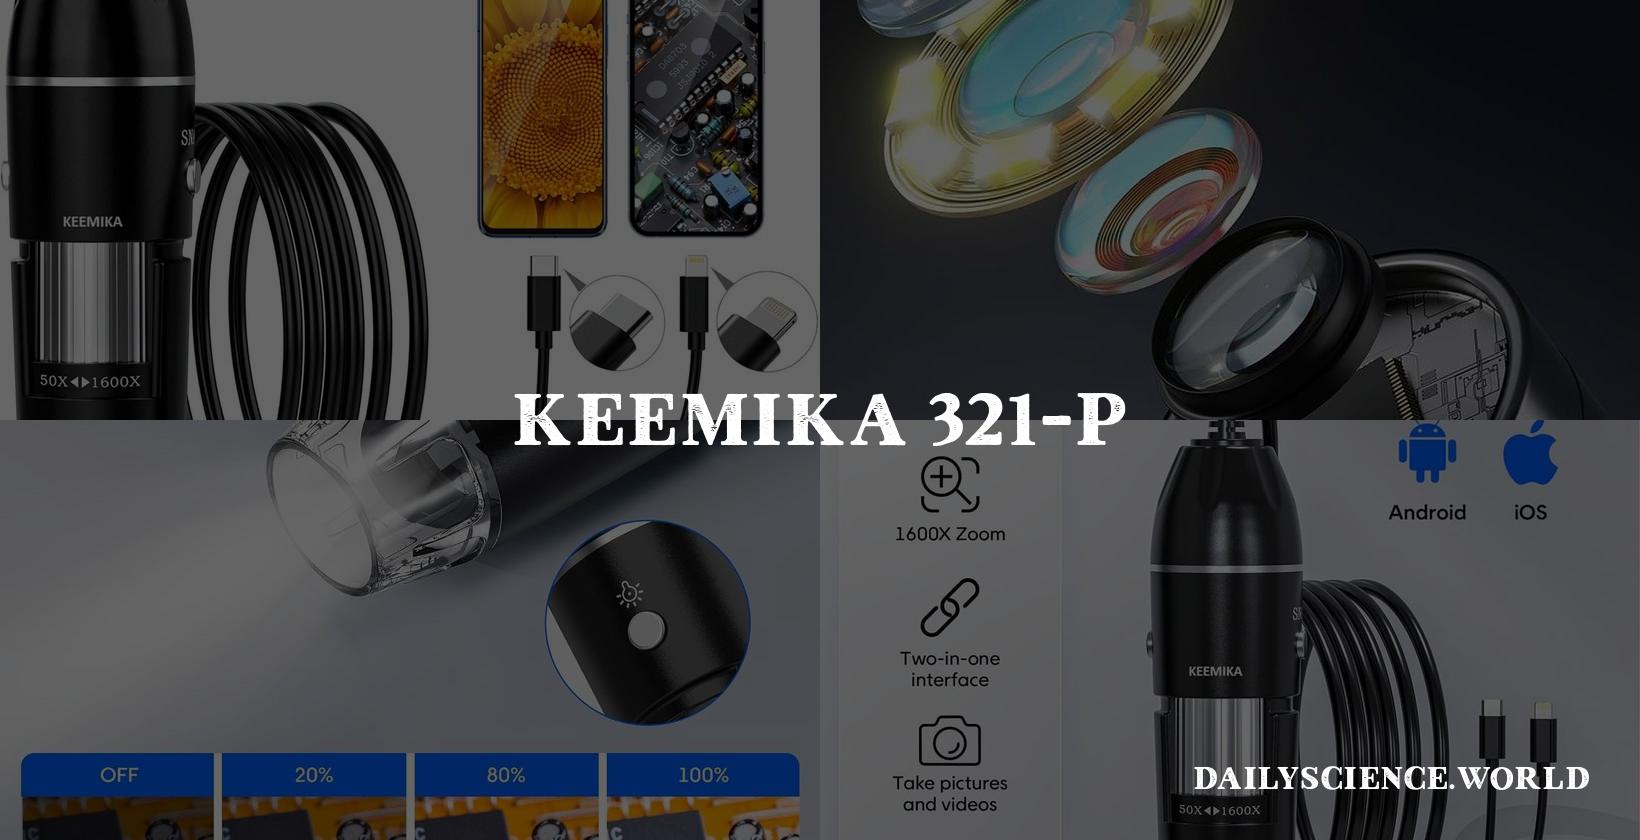 KEEMIKA 321-P USB Digital Microscope